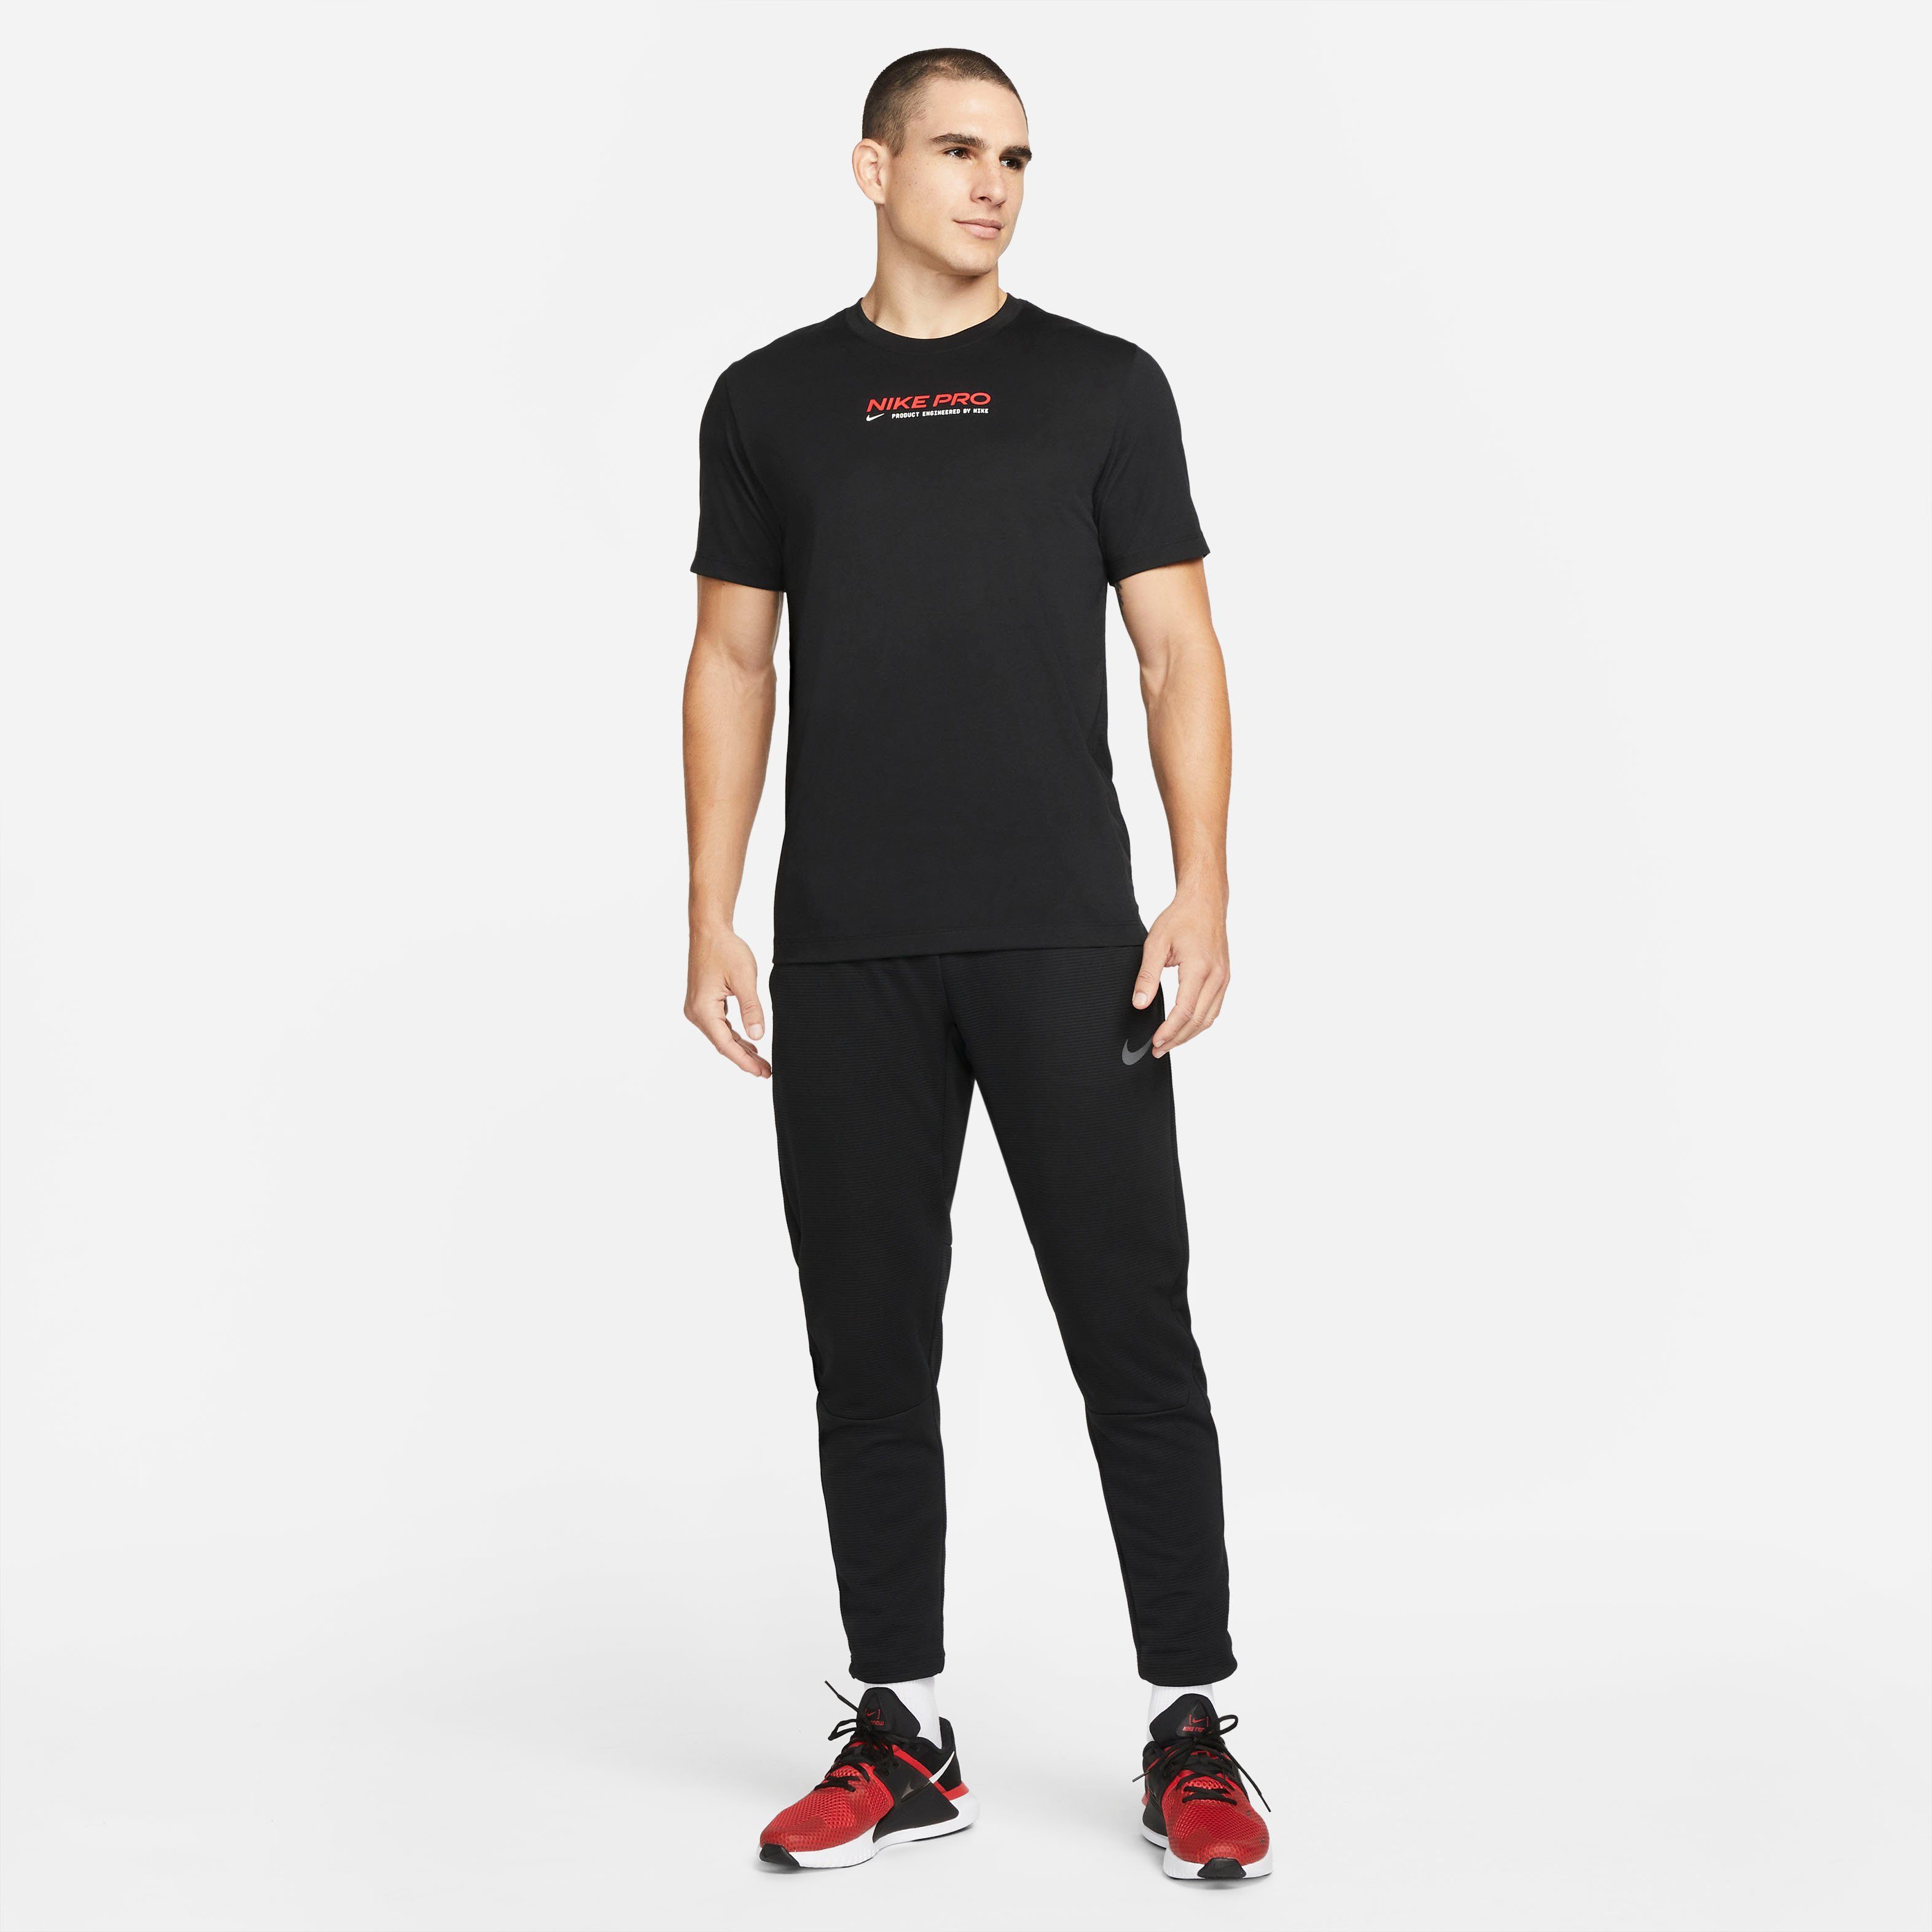 Pro Nike BLACK Trainingsshirt Men's Dri-FIT T-Shirt Training